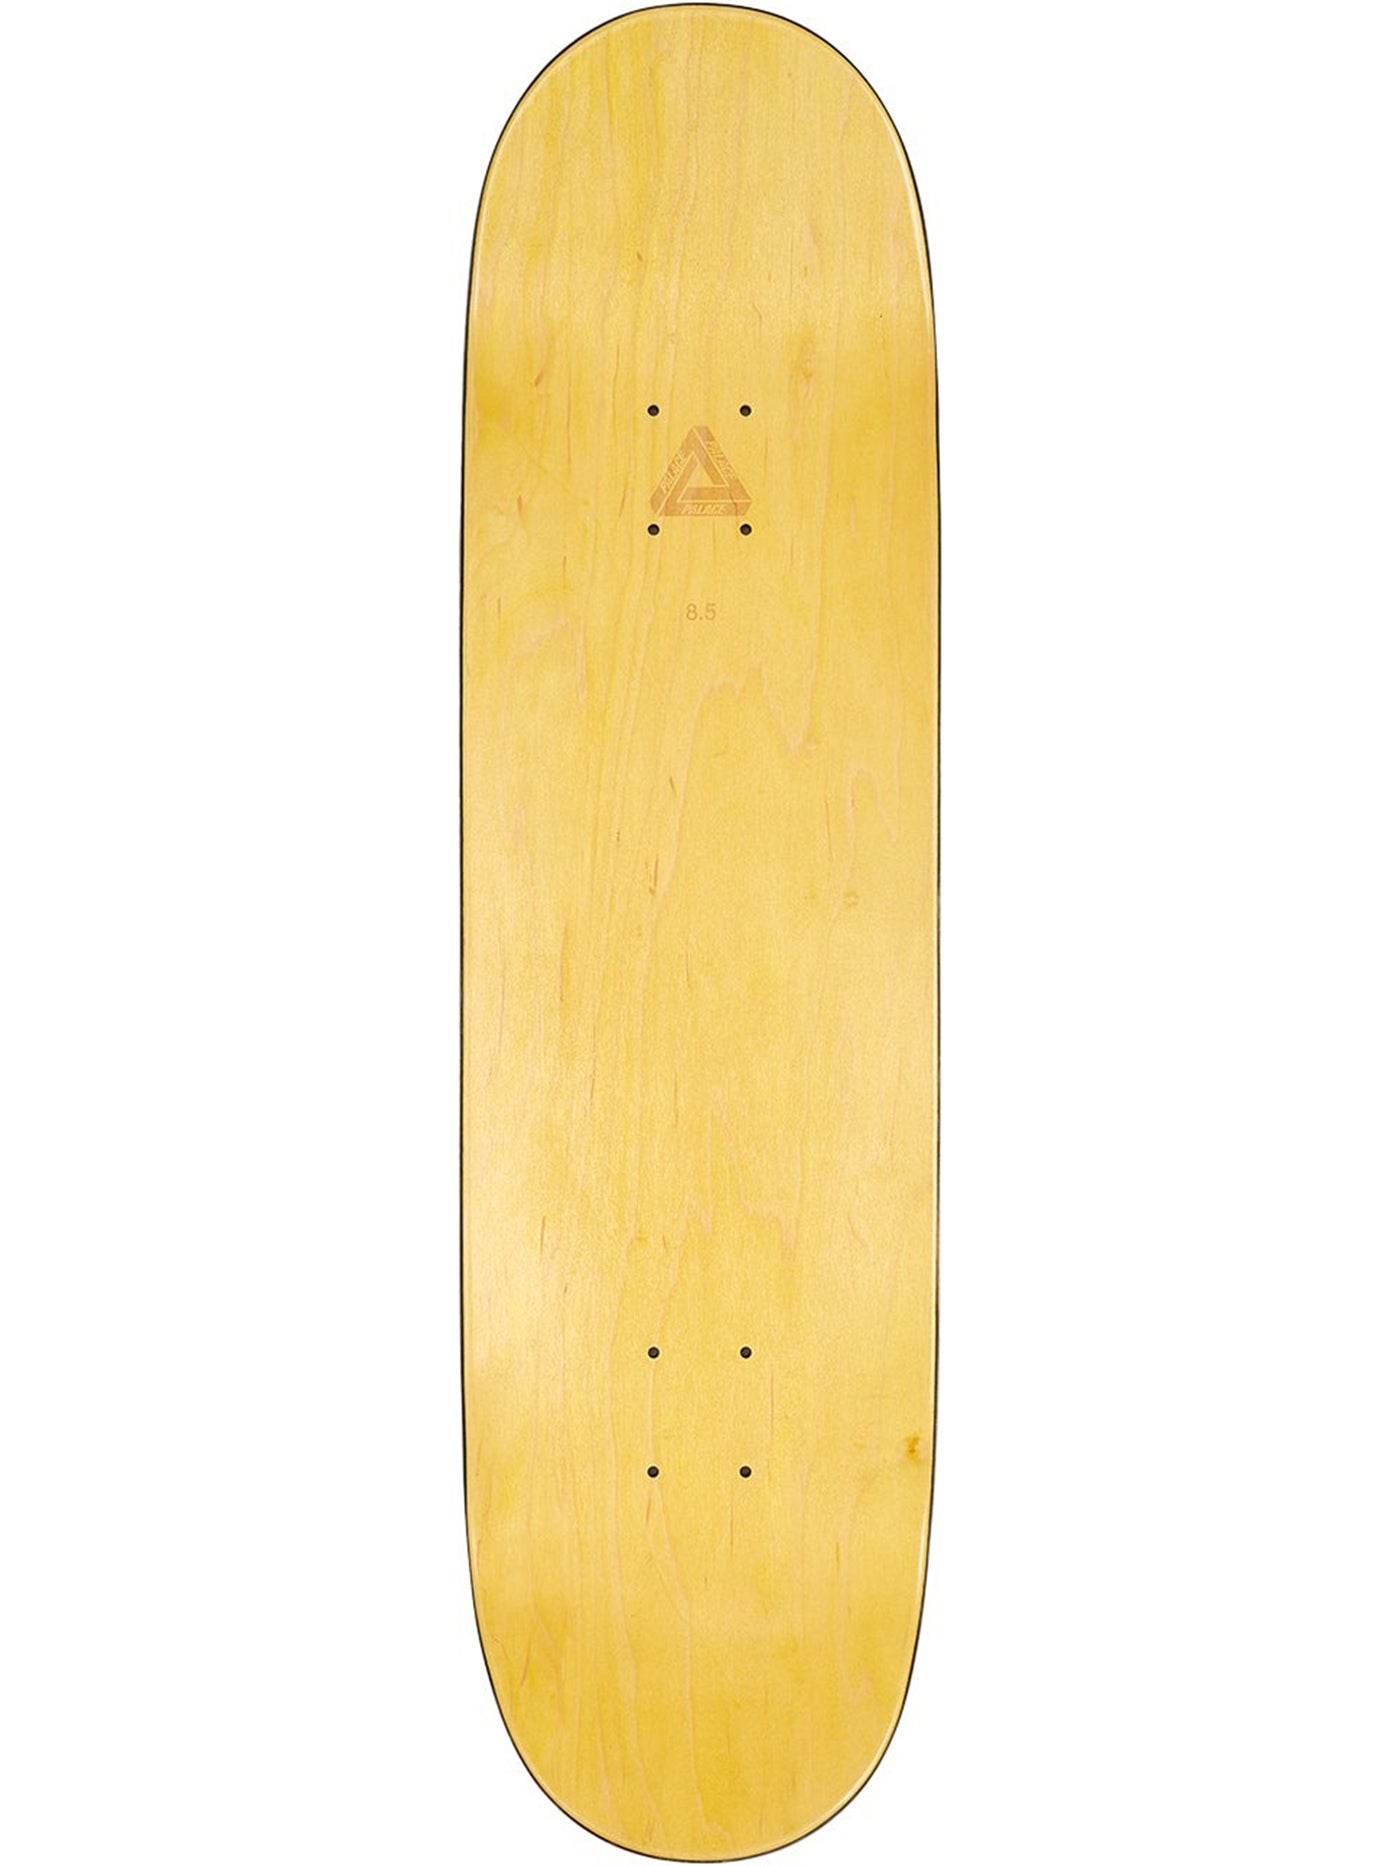 Palace Charlie Pro S33 8.5 Skateboard Deck